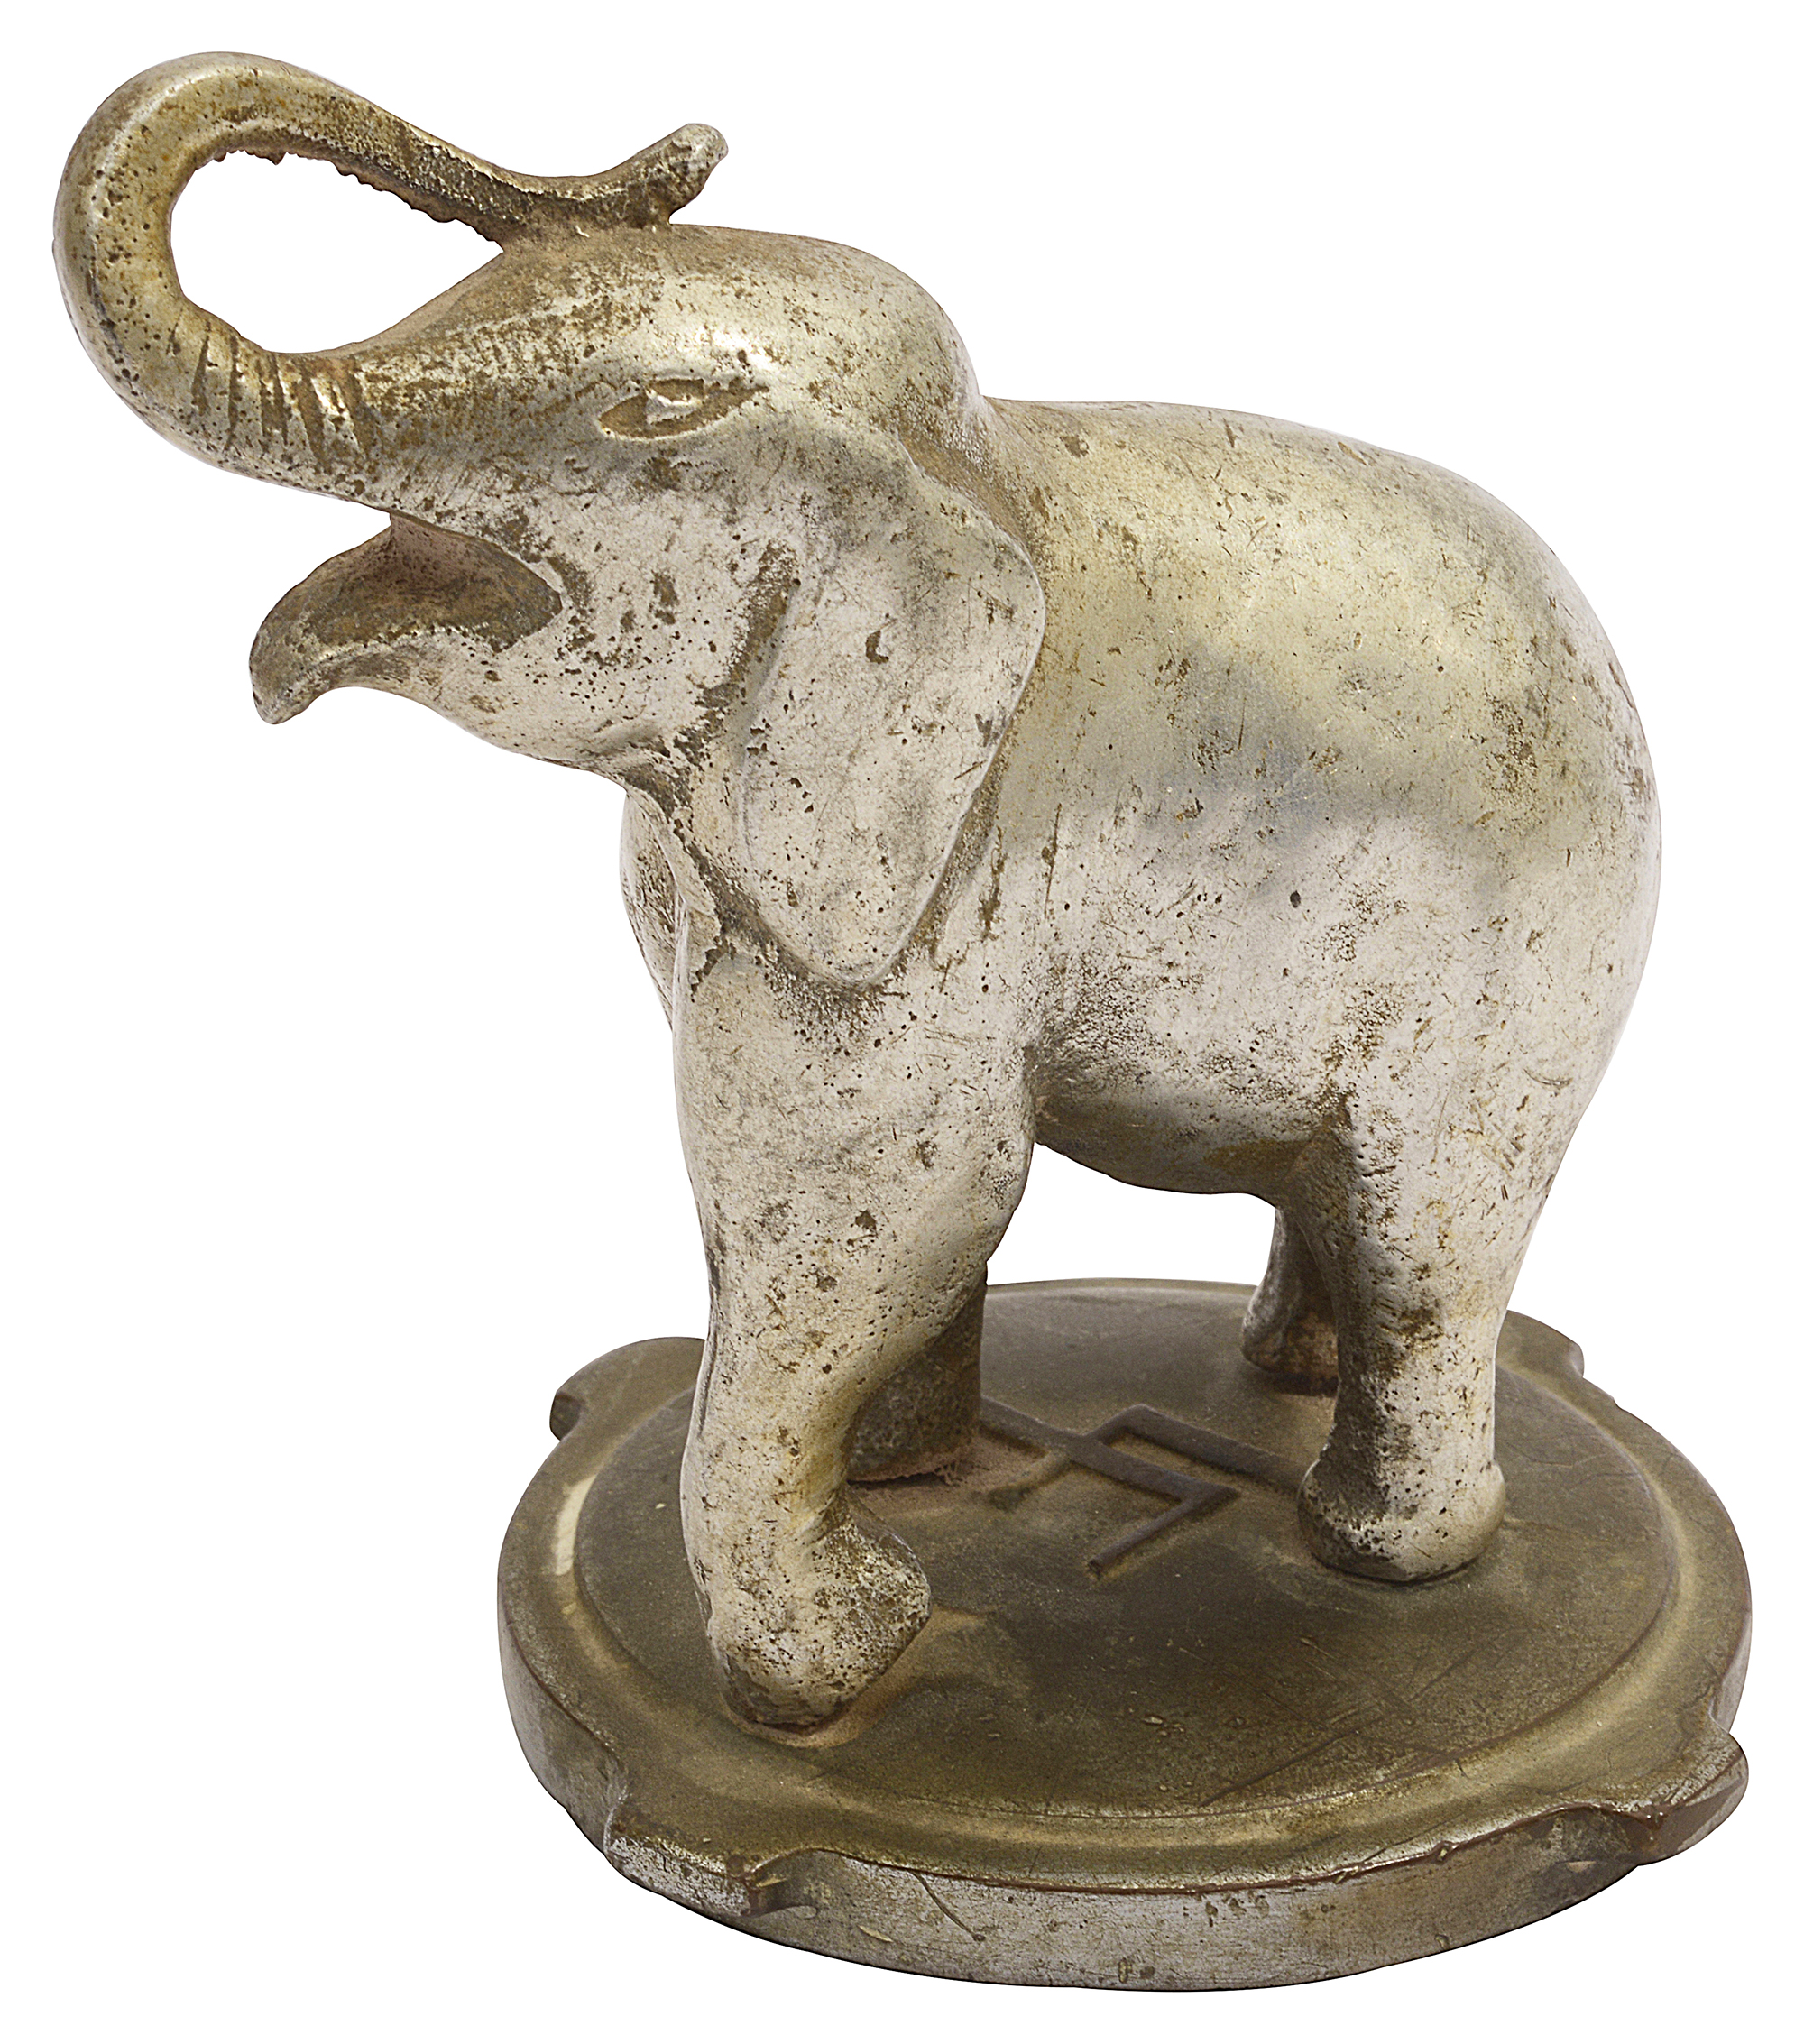 An early 20th century chrome elephant car mascot